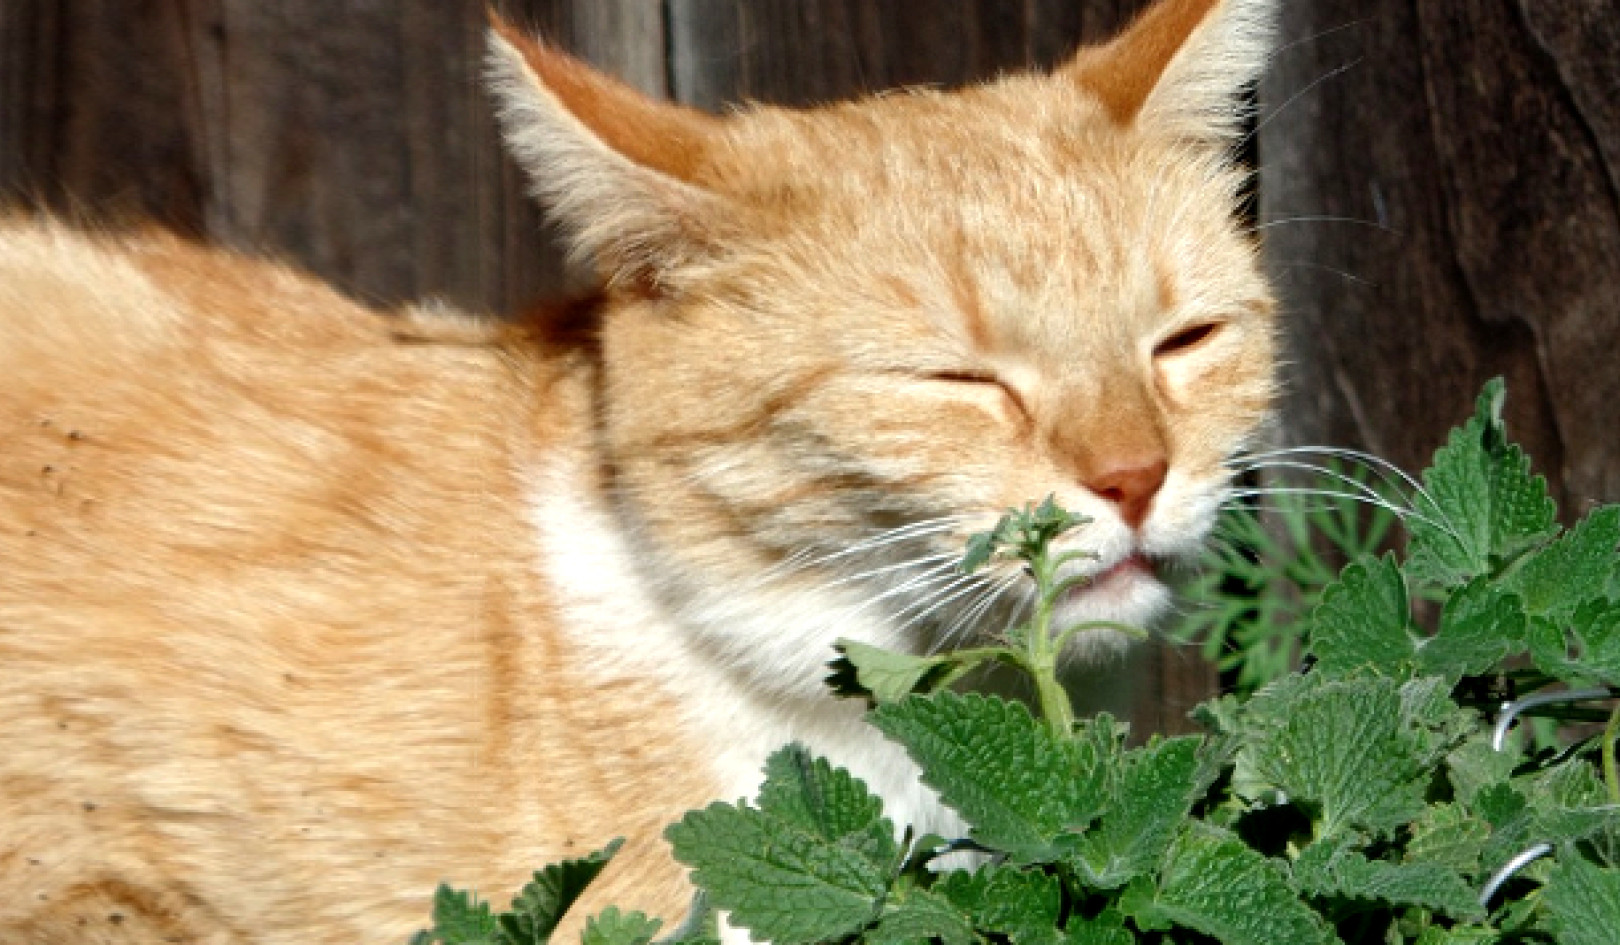 Luonnollinen hyönteiskarkotusresepti: Jopa kissasi saattaa pitää siitä